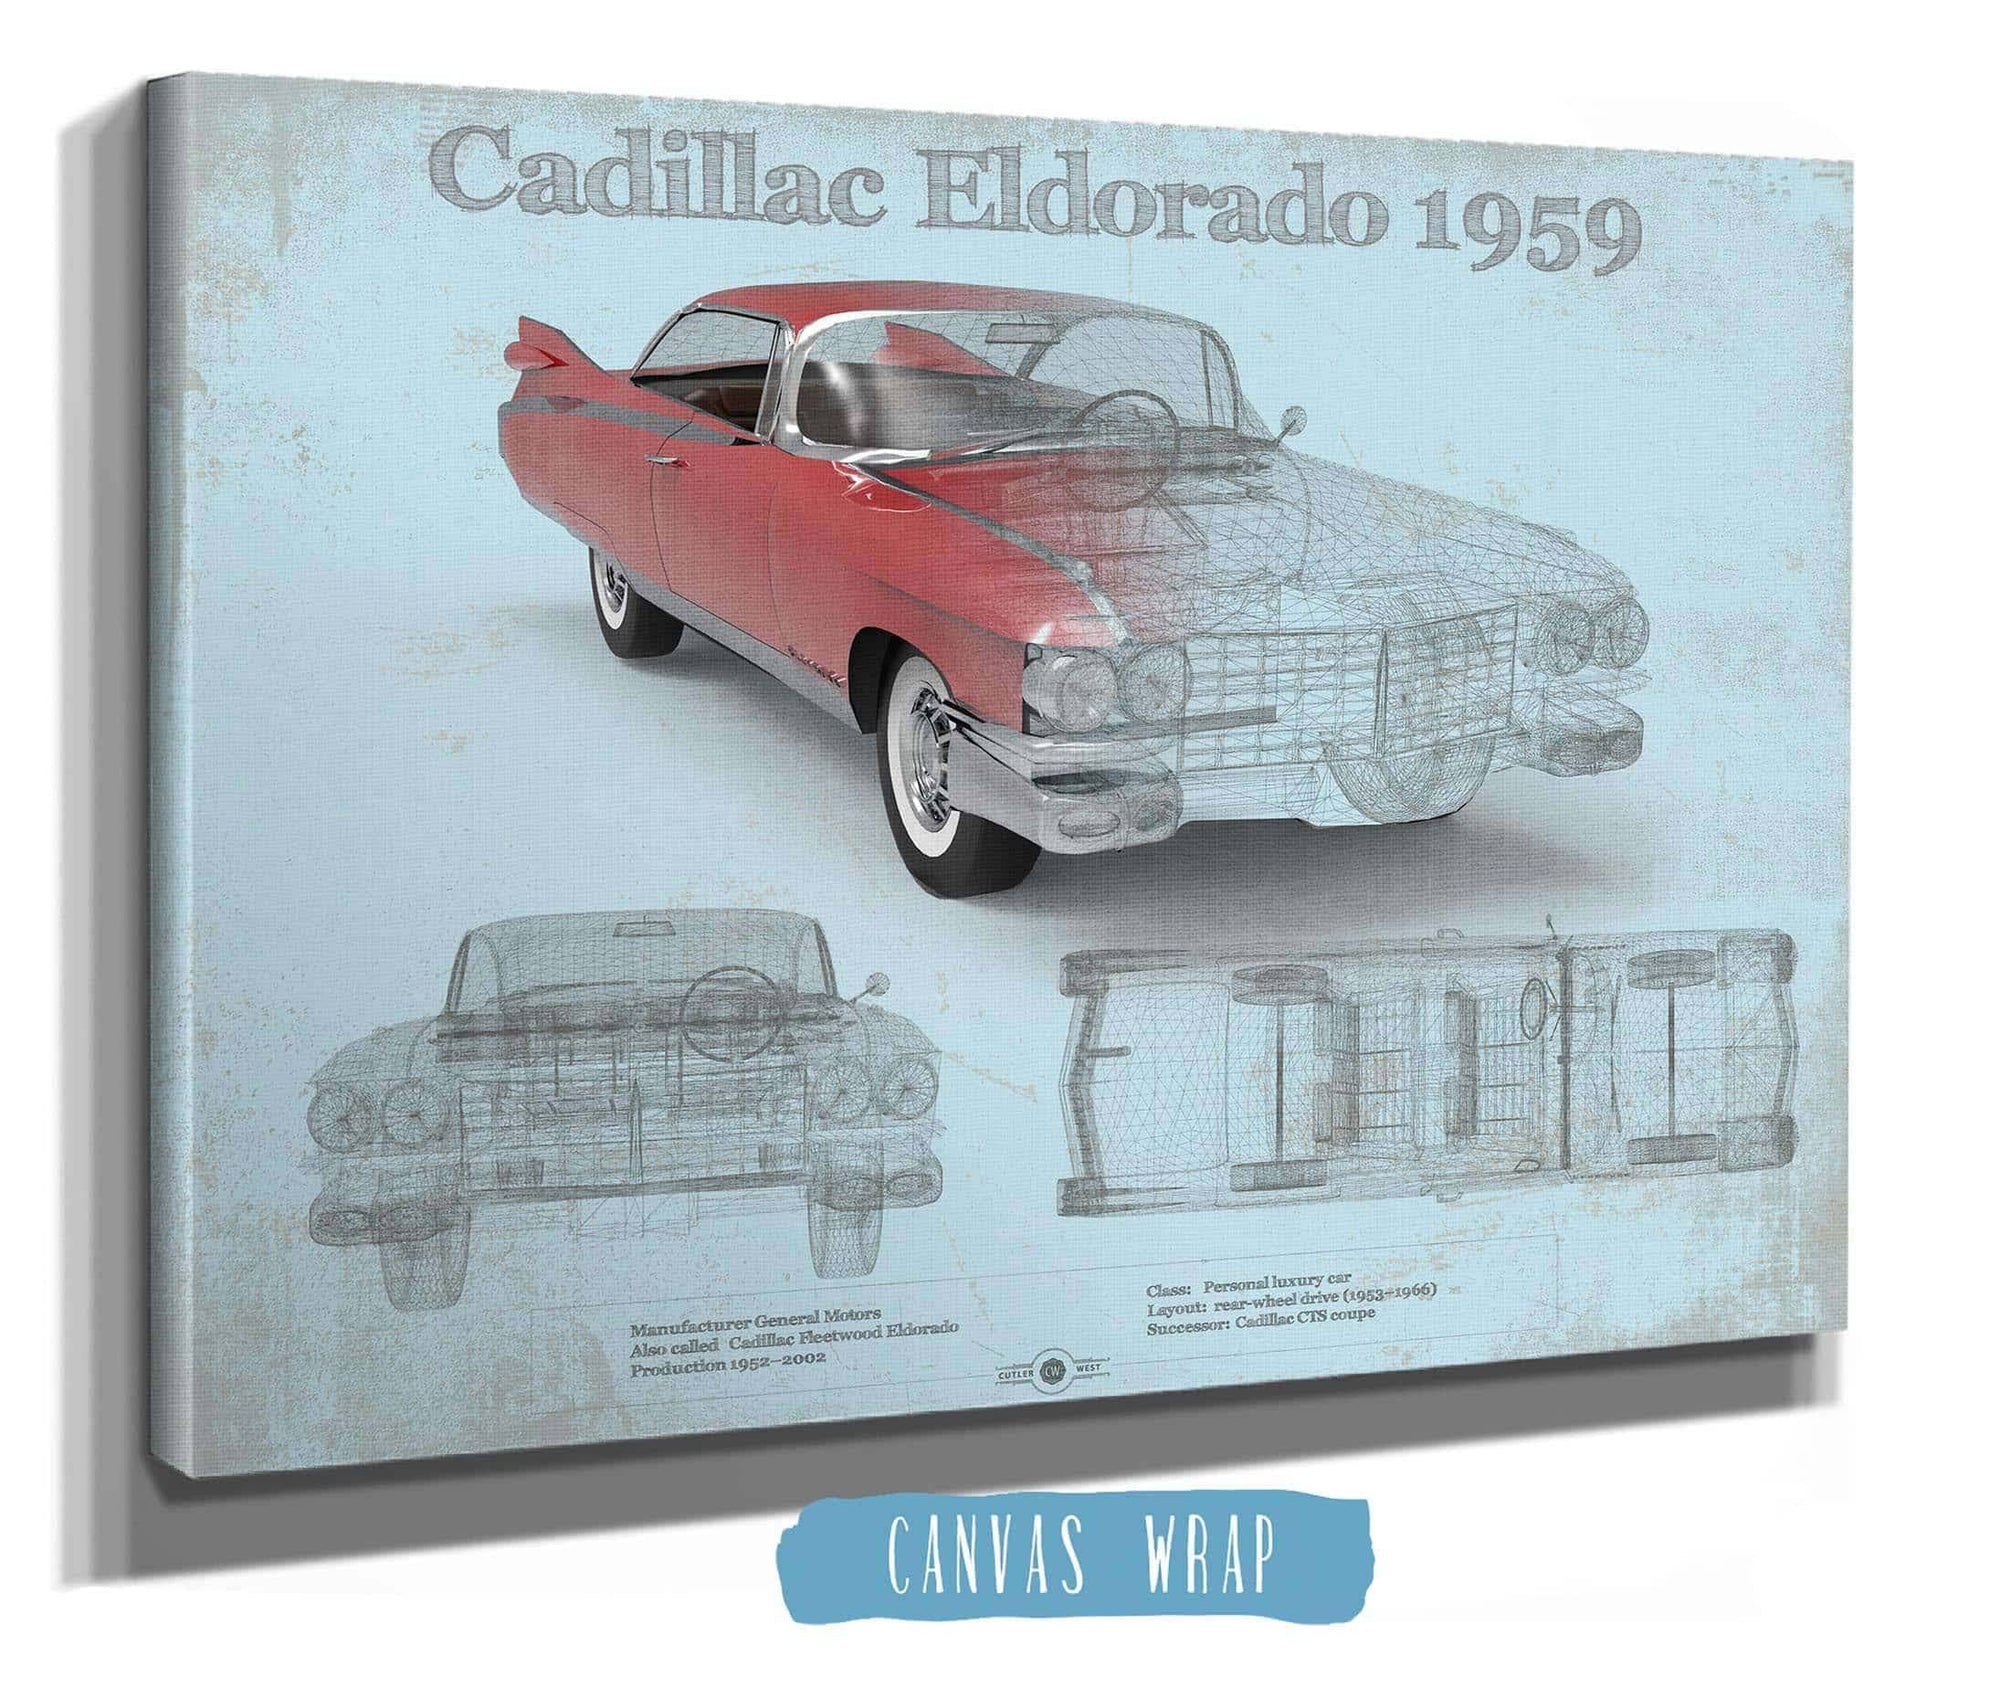 Cutler West Cadillac Collection Cadillac Eldorado Hardtop 1959 Cadillac Vintage Car Print